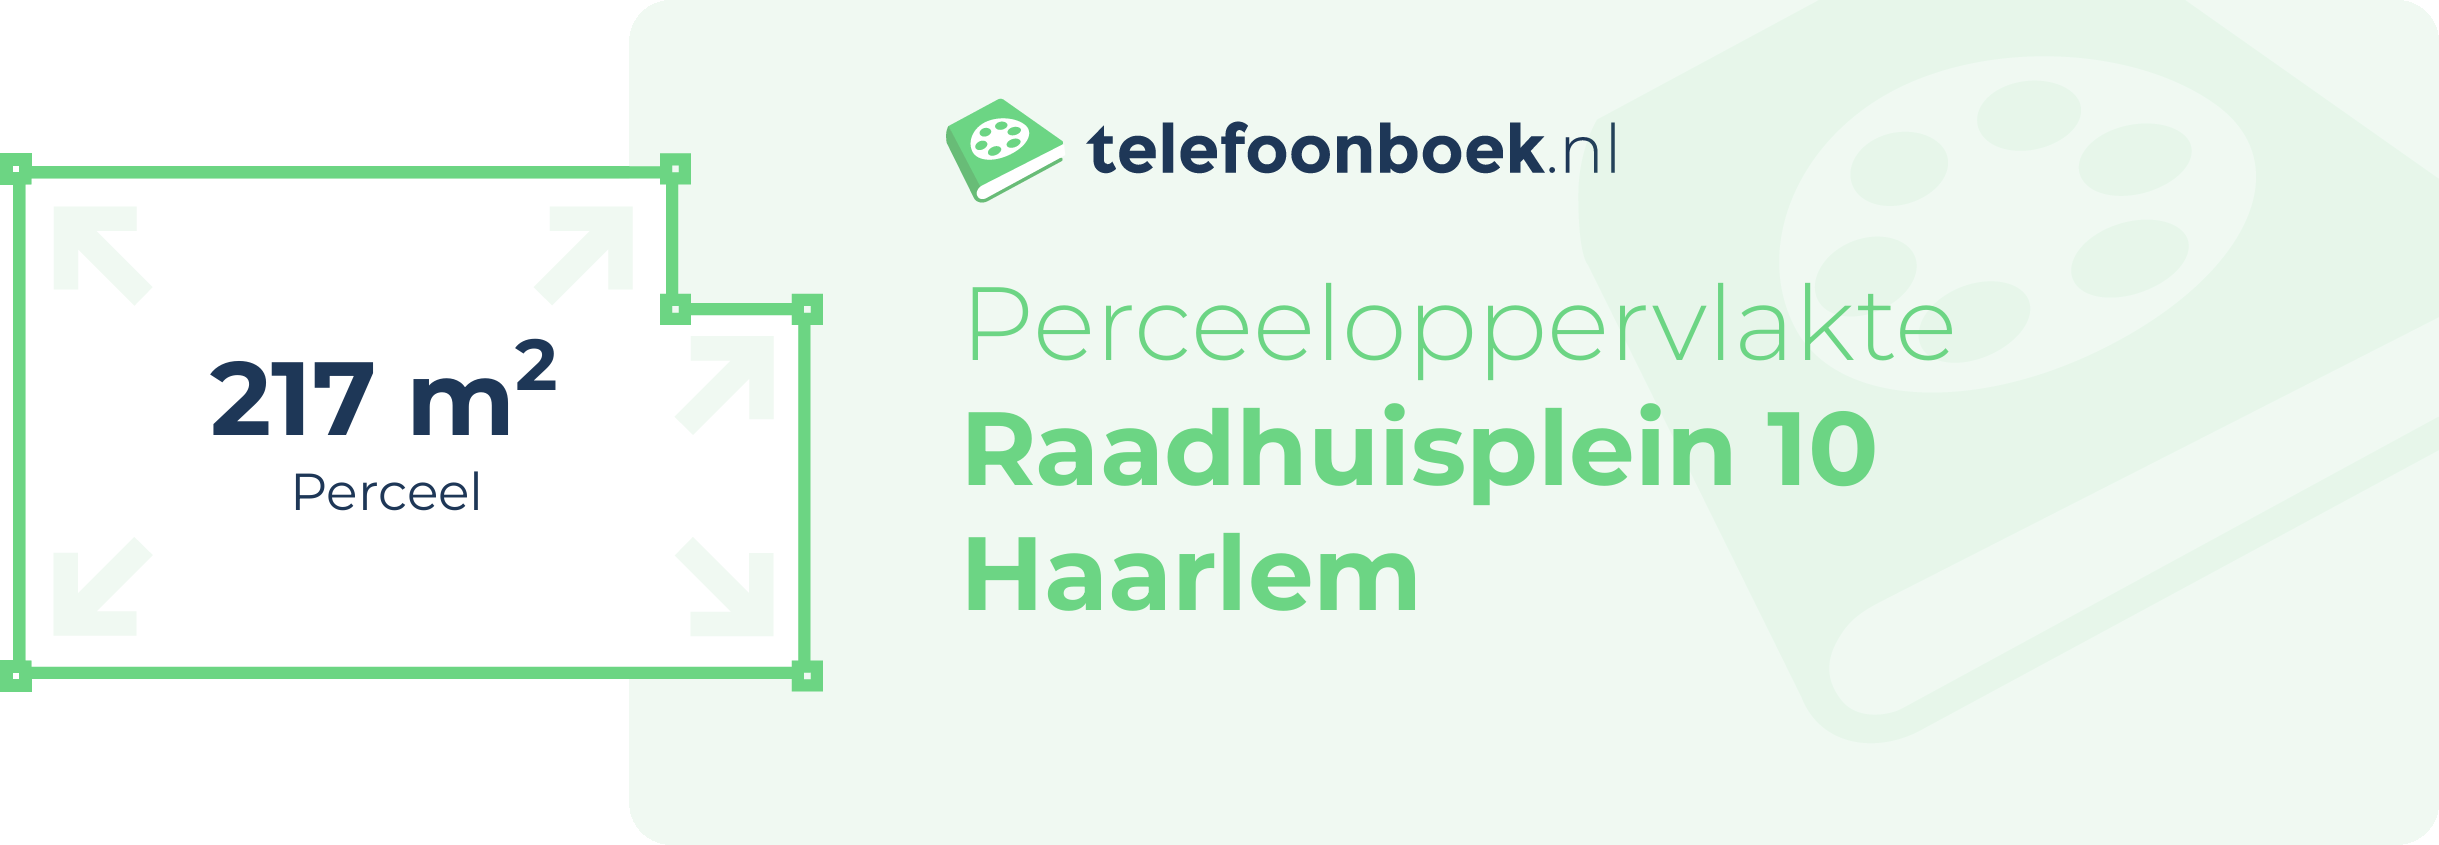 Perceeloppervlakte Raadhuisplein 10 Haarlem